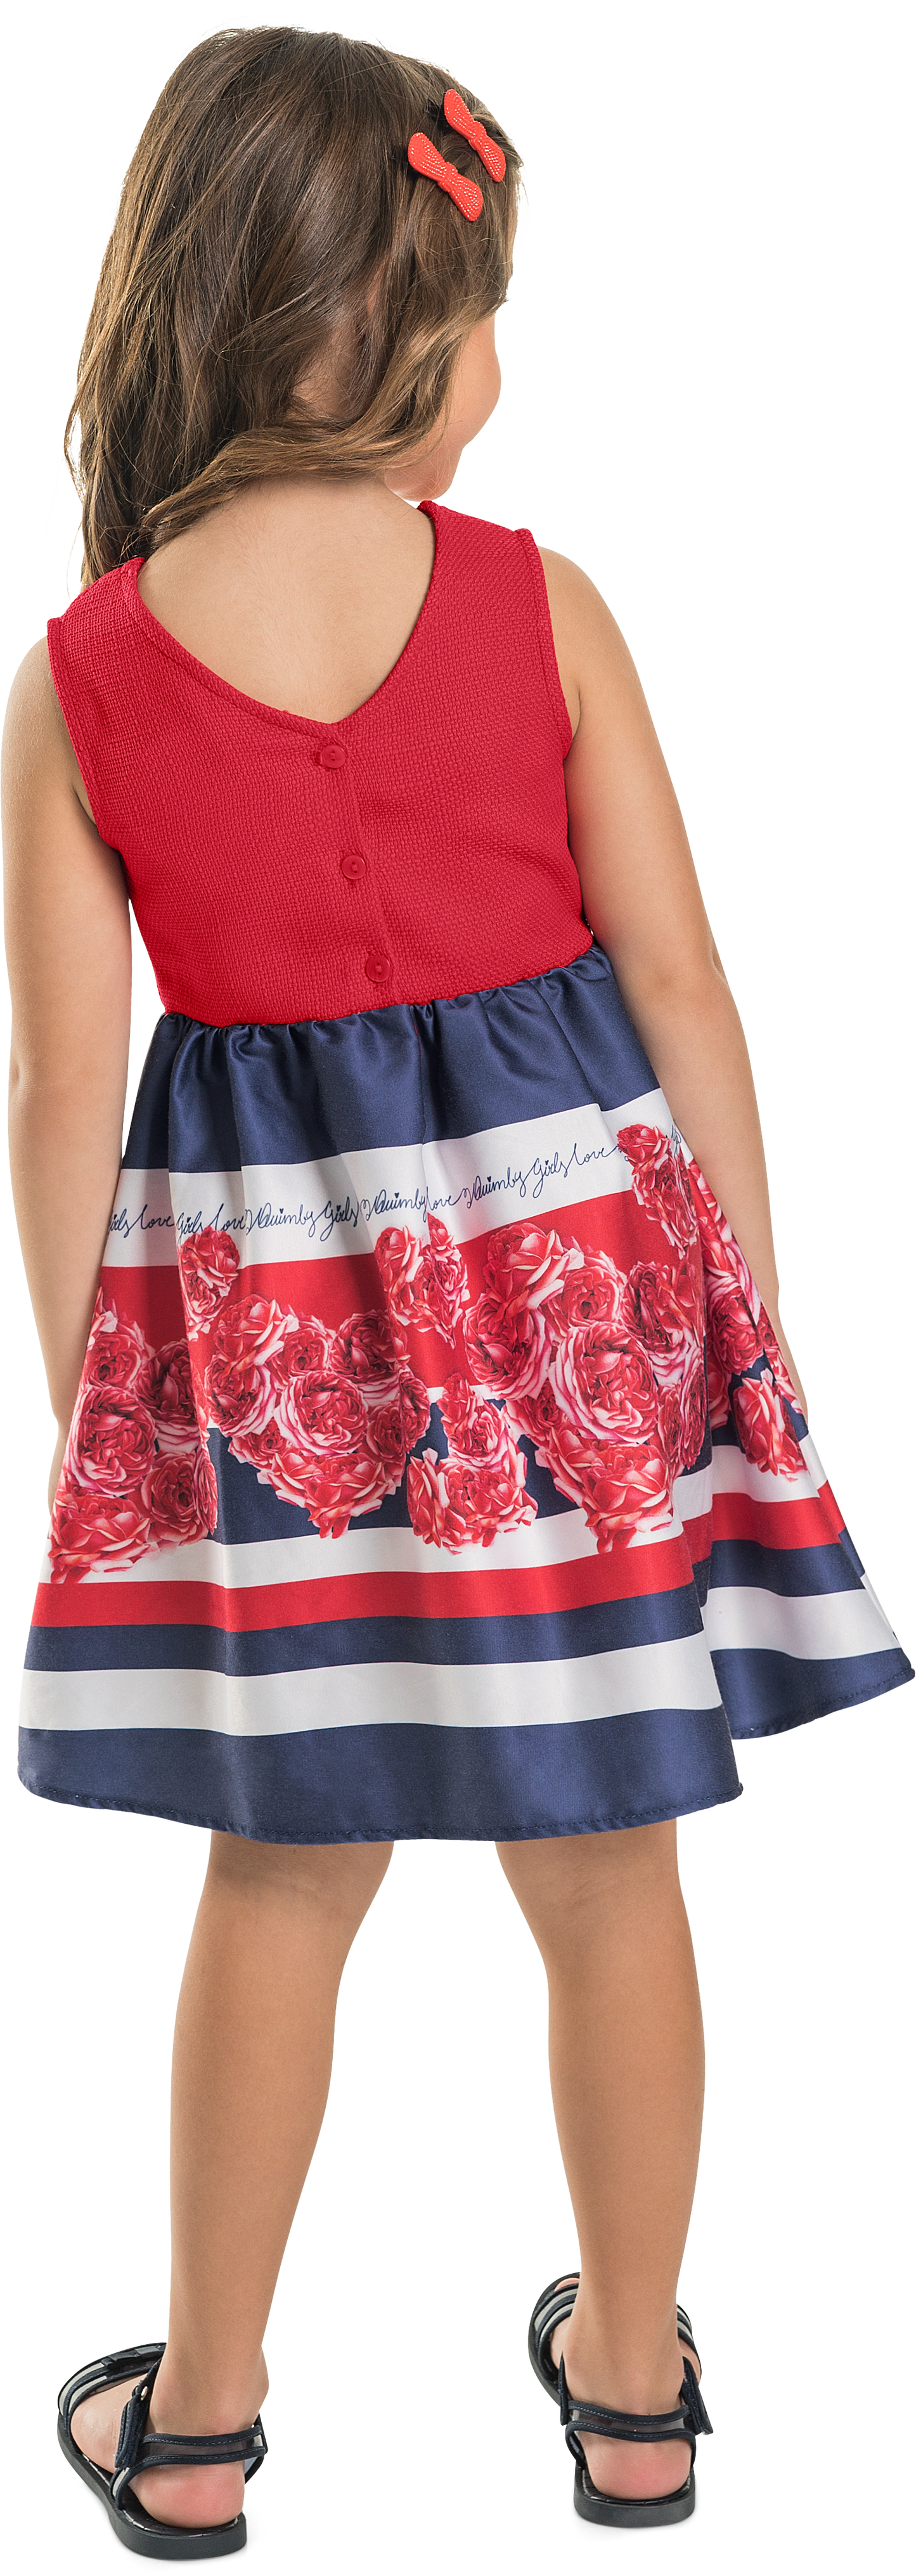 Woven Rose Dress